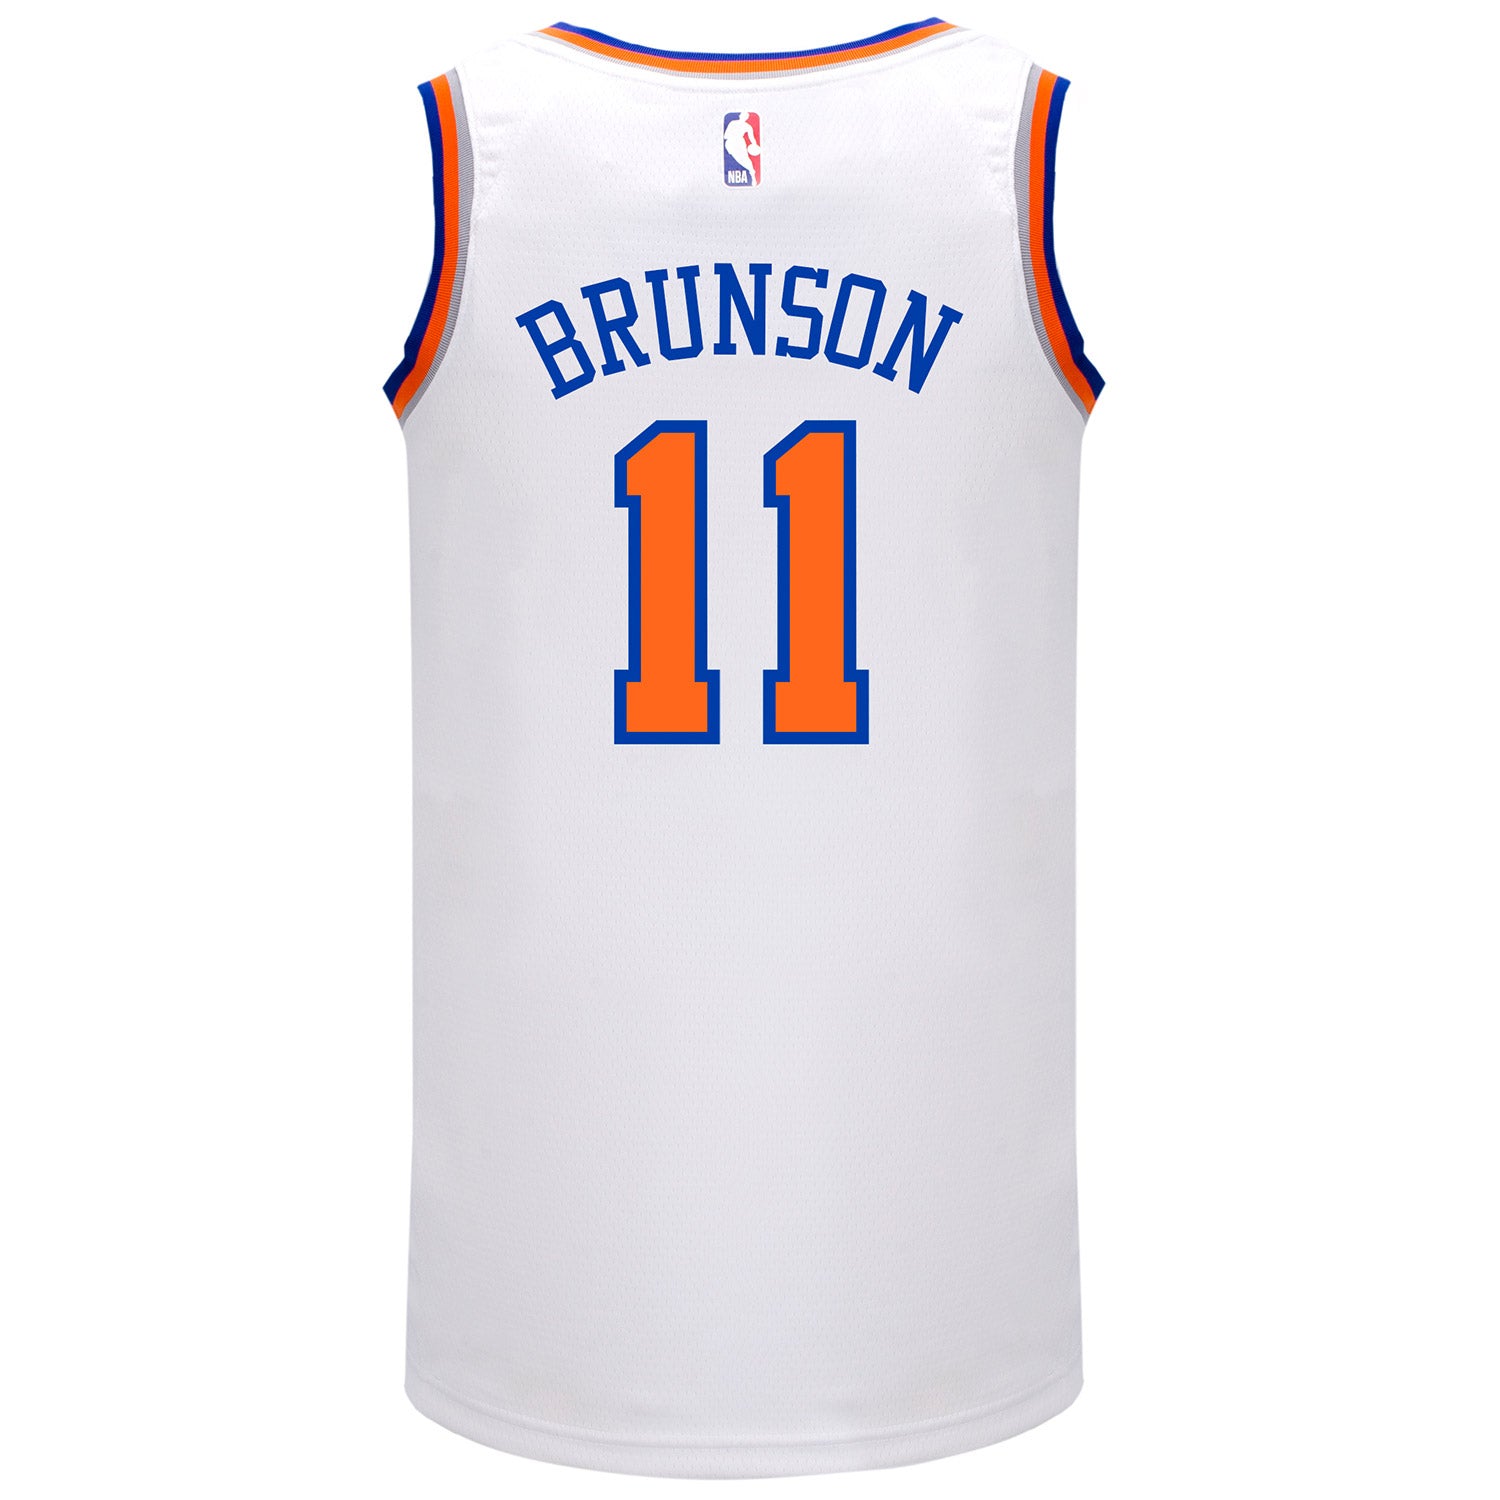 Nike New York Knicks Jalen Brunson Jersey City Edition size XL 52